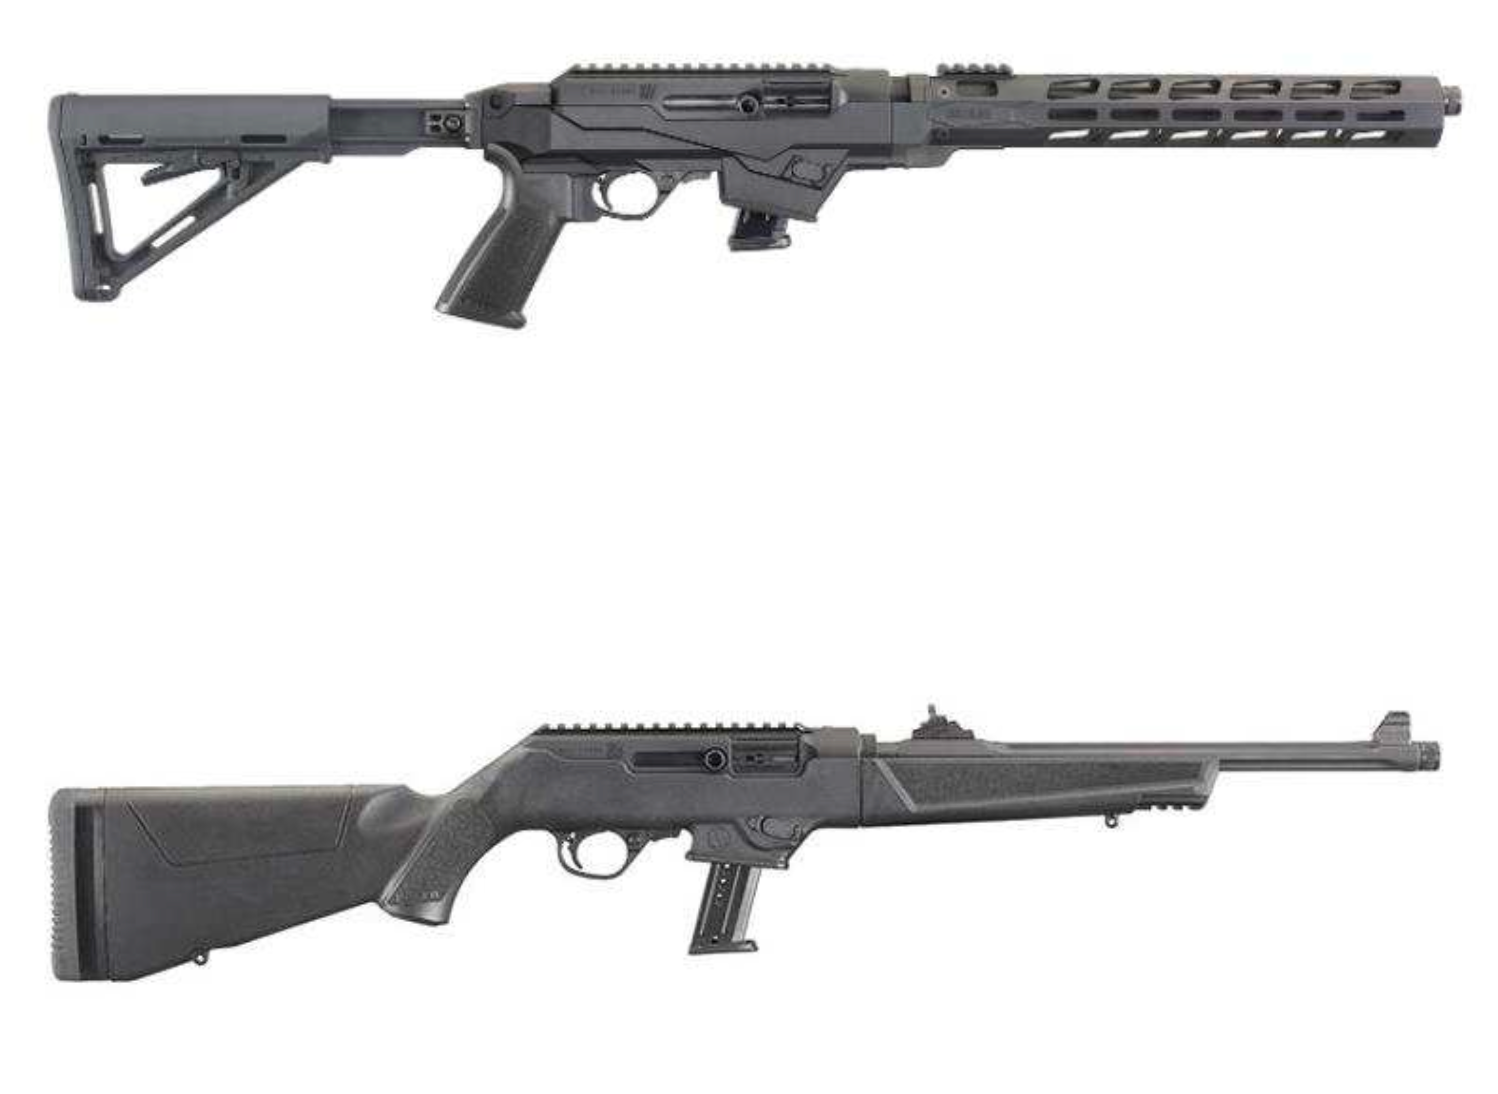 Varianter av Ruger PC Carbine, ett halvautomaiskt vapen av kalibern 9X19. Nakenskytten uppger i förhör att han hade 31 patroner i magasinet.